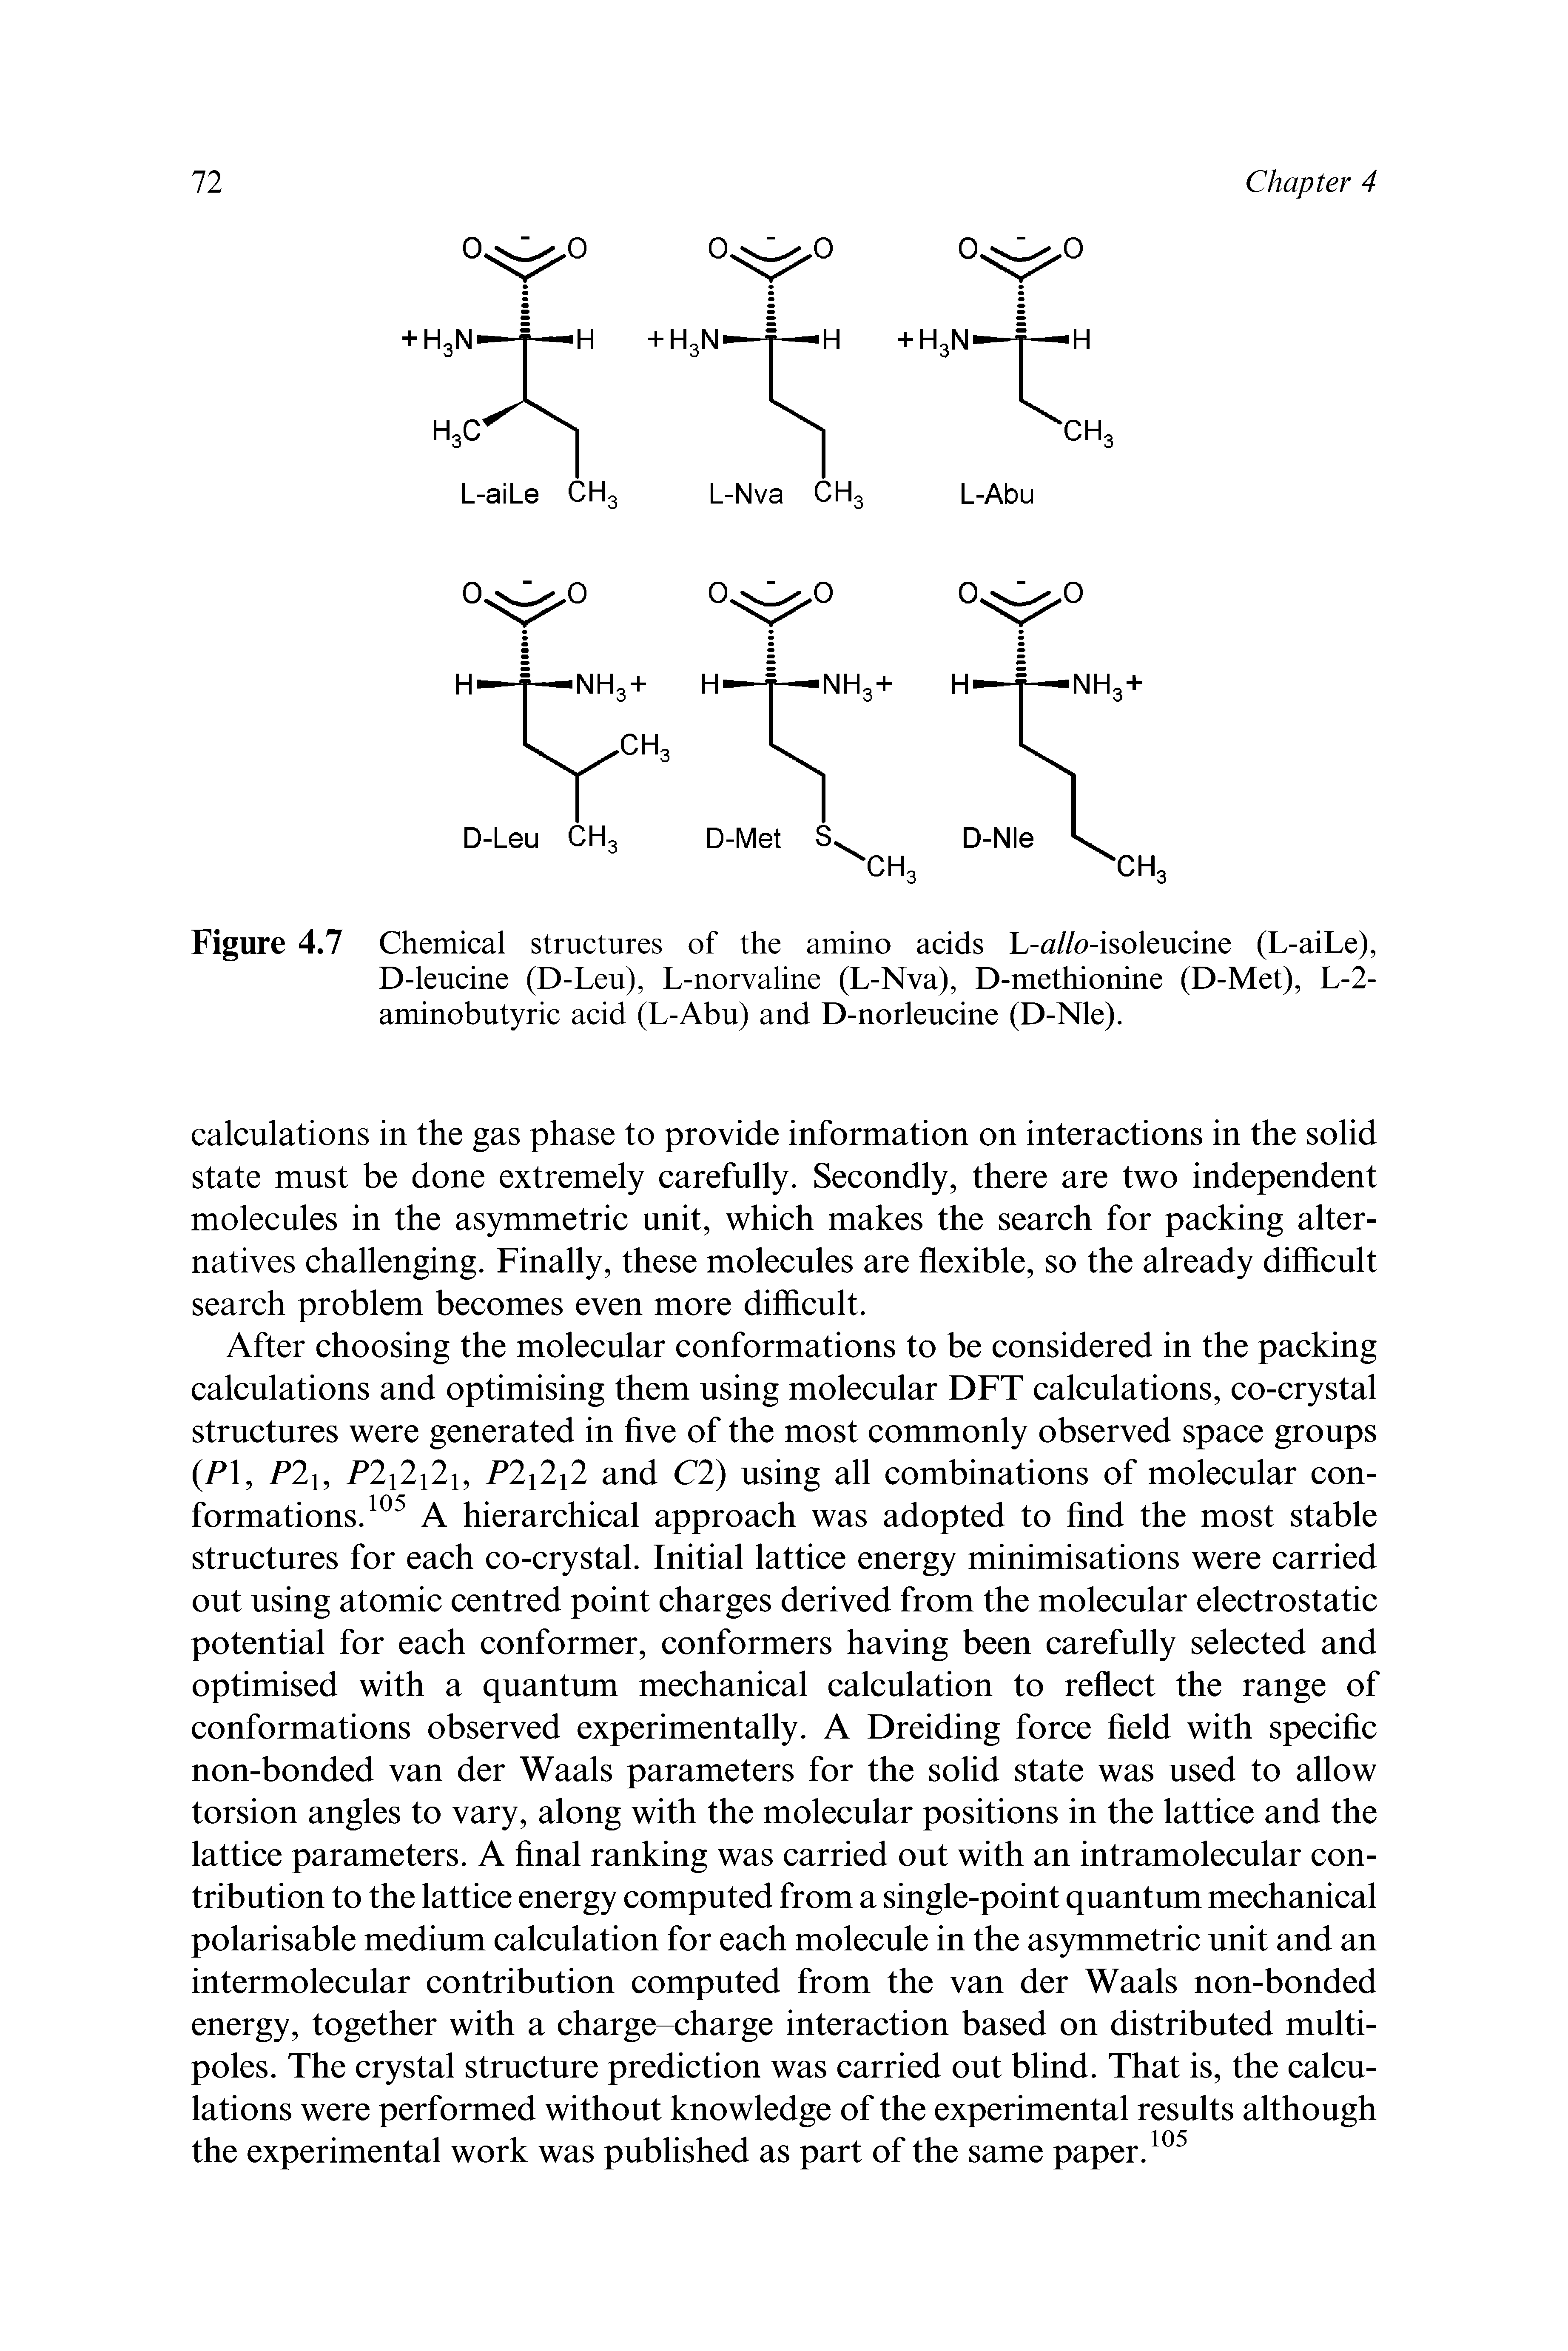 Figure 4.7 Chemical structures of the amino acids L- //o-isoleucine (L-aiLe), D-leucine (D-Leu), L-norvaline (L-Nva), D-methionine (D-Met), L-2-aminobutyric acid (L-Abu) and D-norleucine (D-Nle).